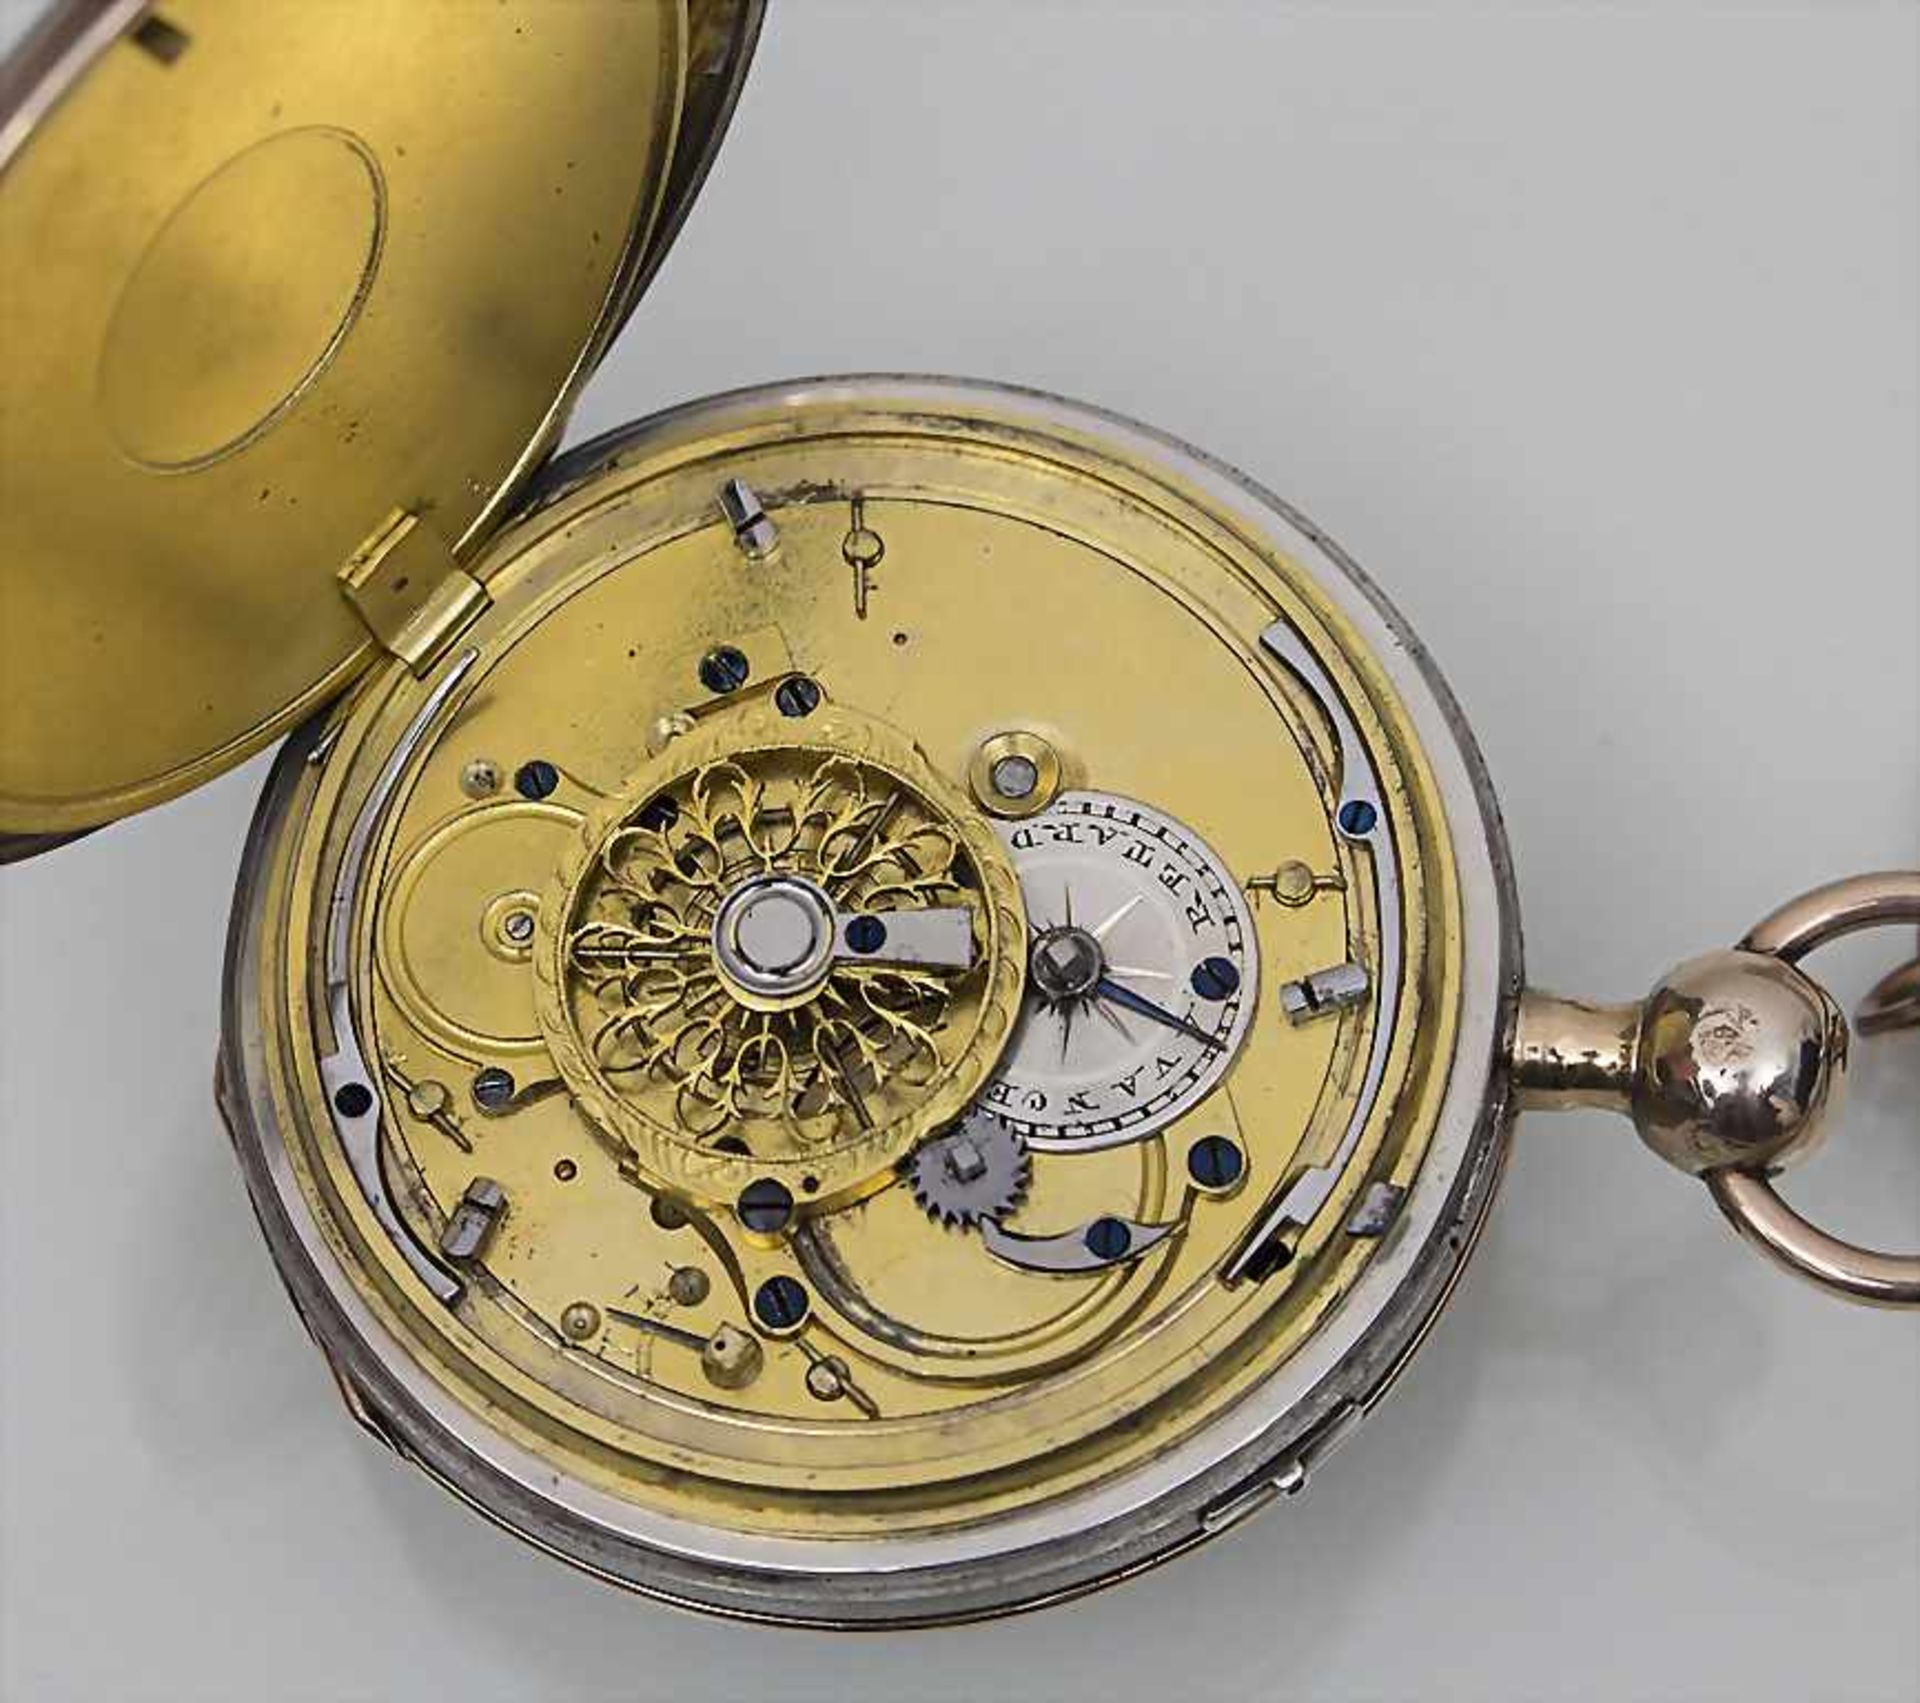 Taschenuhr / Pocket Watch, ¼-Repetition, Swiss Made, ca. 1850 - Bild 2 aus 2